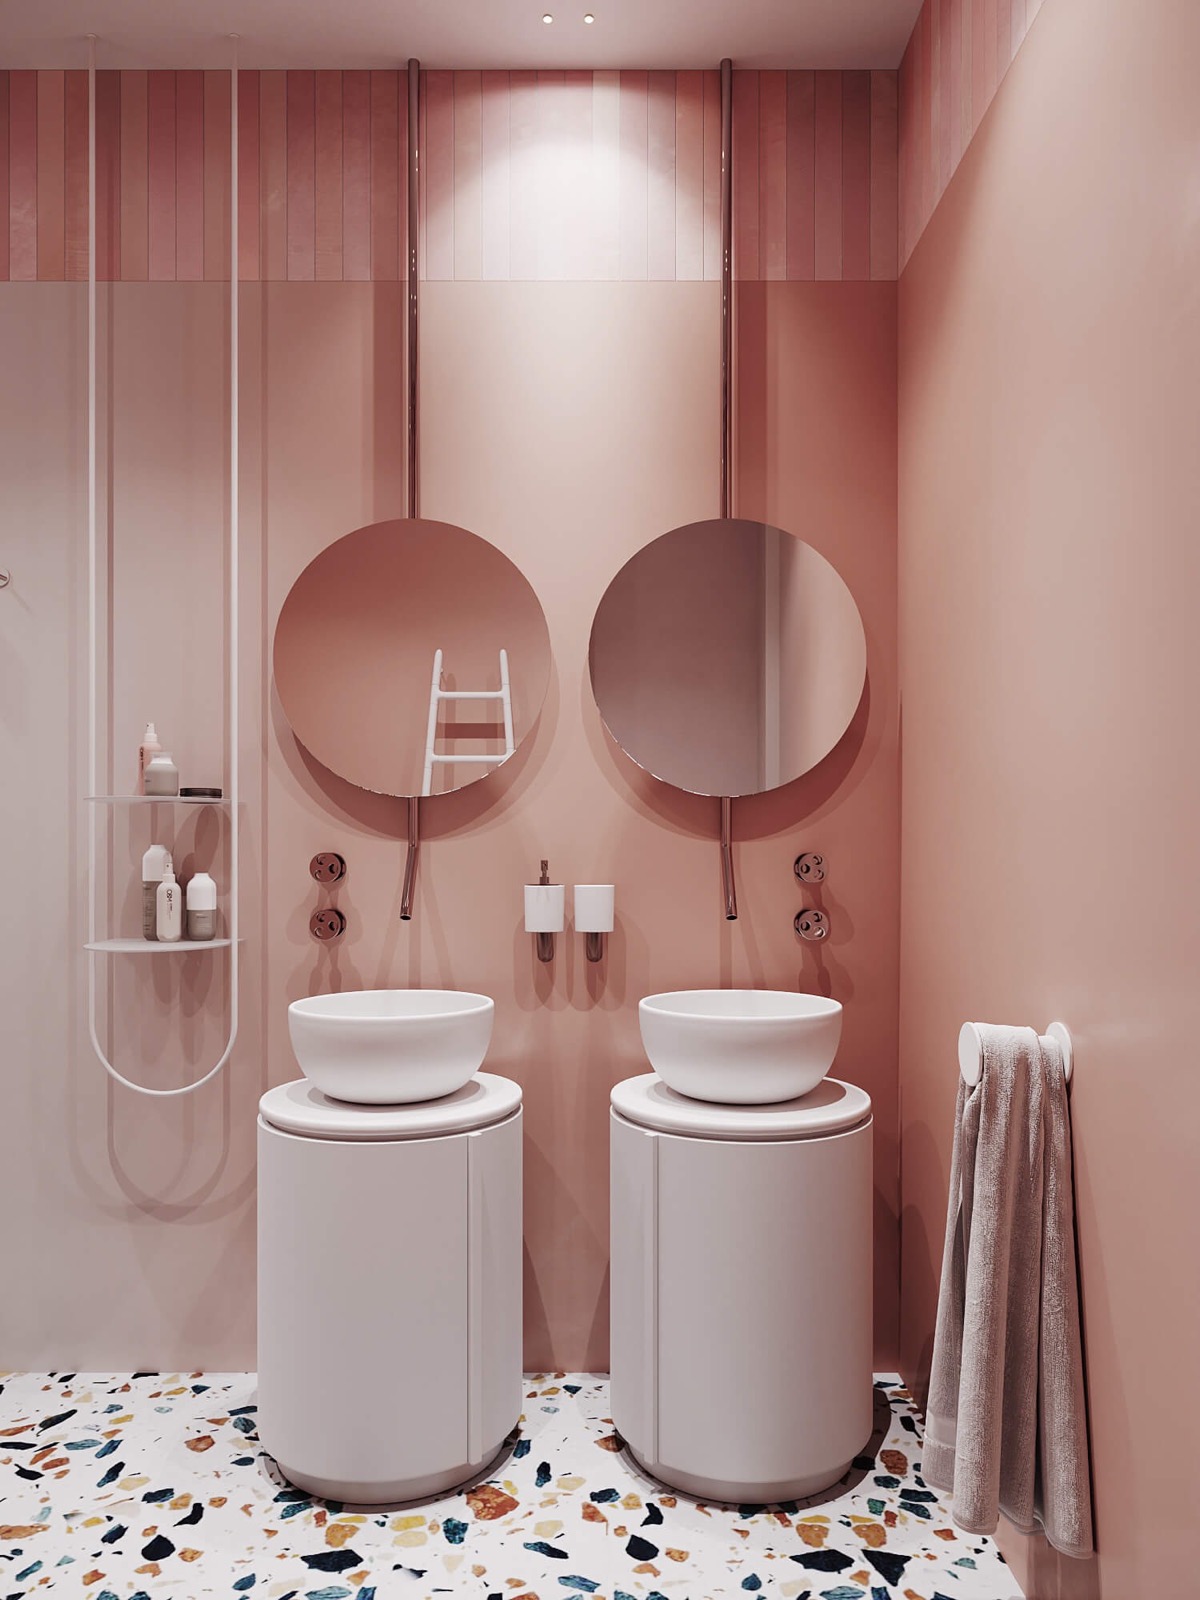 Toàn bộ bức tường bao phủ màu hồng phấn với 2 tấm gương tròn vừa tạo hiệu ứng phản chiếu ánh sáng vừa “nhân đôi” không gian về mặt thị giác. Sàn nhà lát gạch terrazzo trở thành điểm nhấn nổi bật để phòng tắm không rơi vào trạng thái một màu.